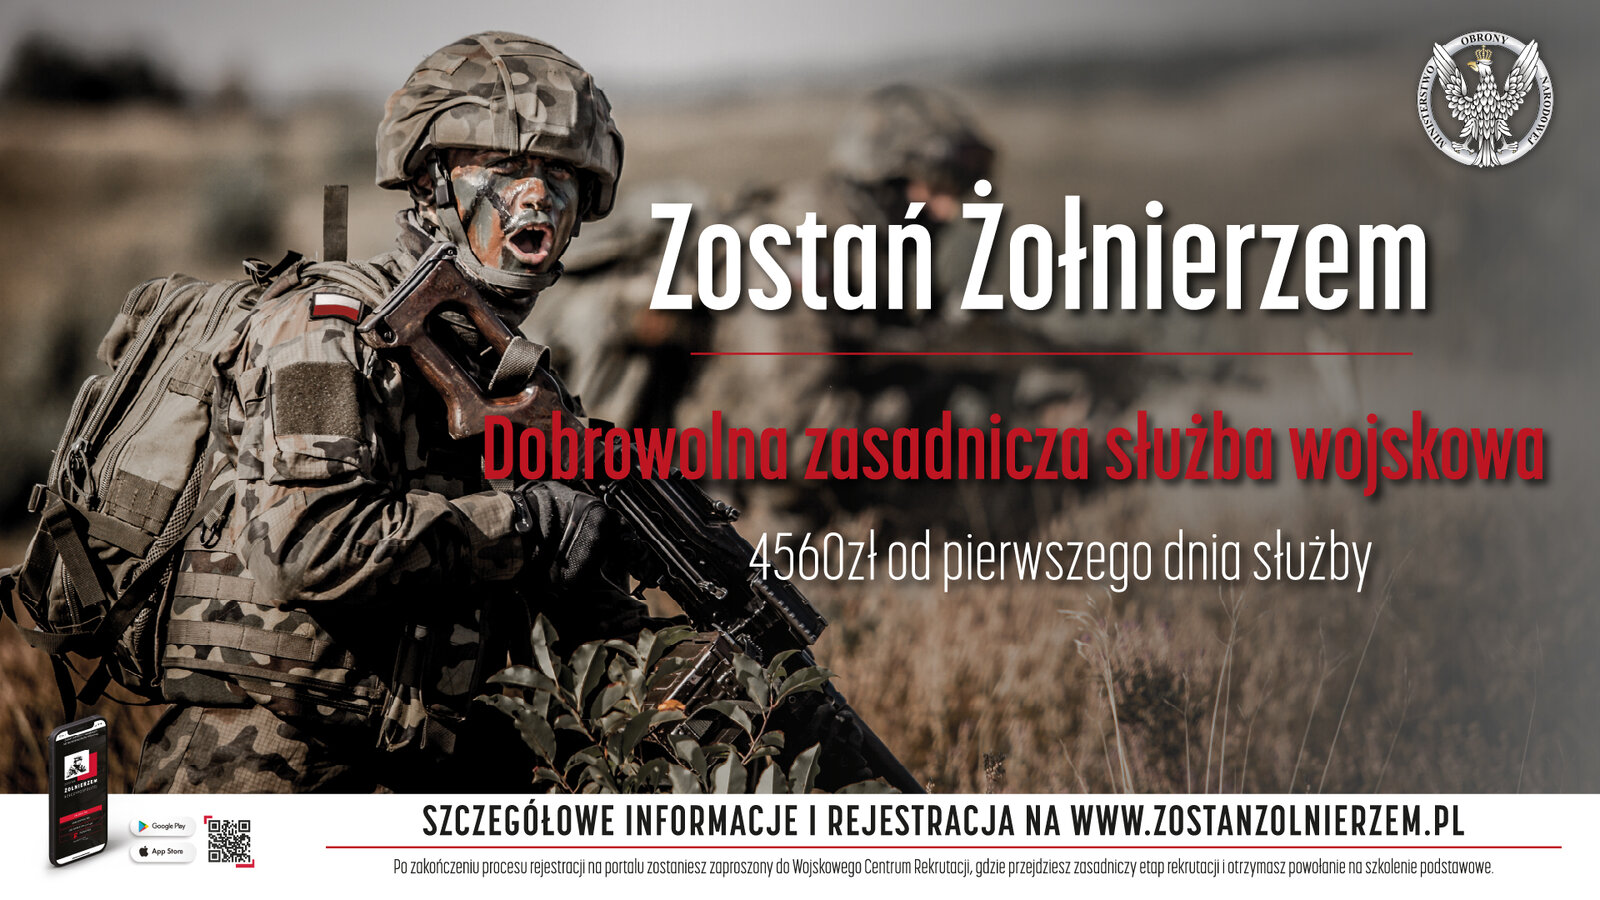 Zostań żołnierzem dobrowolnej zasadniczej służby wojskowej - plakat